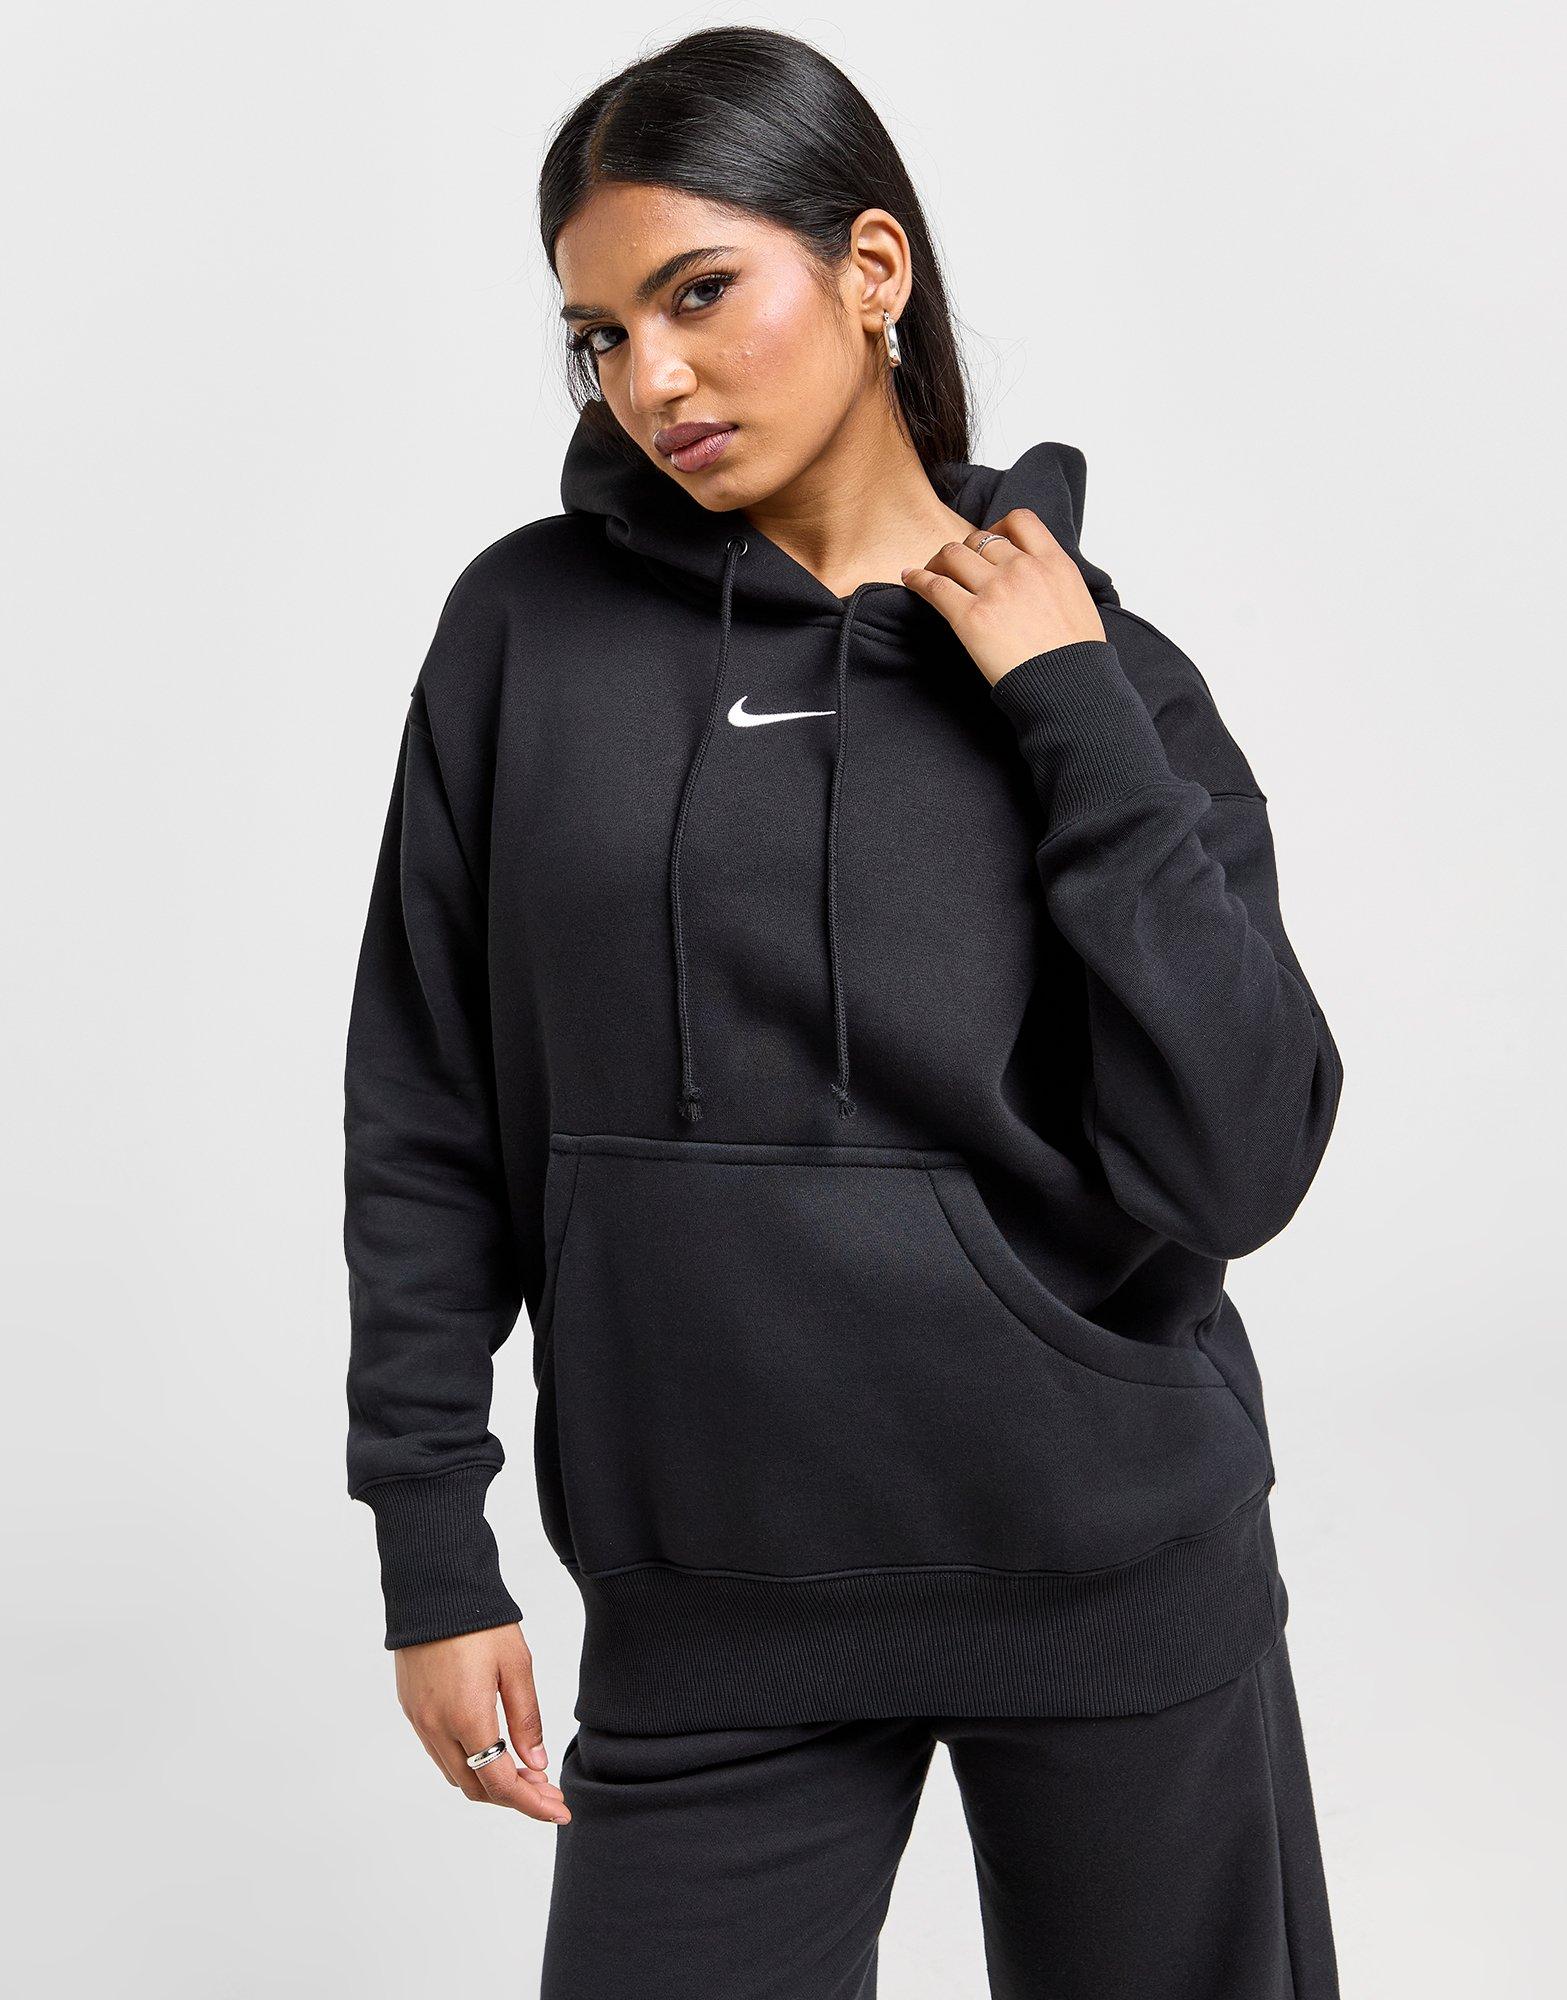 Nike Pull Fleece Femme Nike Sporstwear Essential (Noir